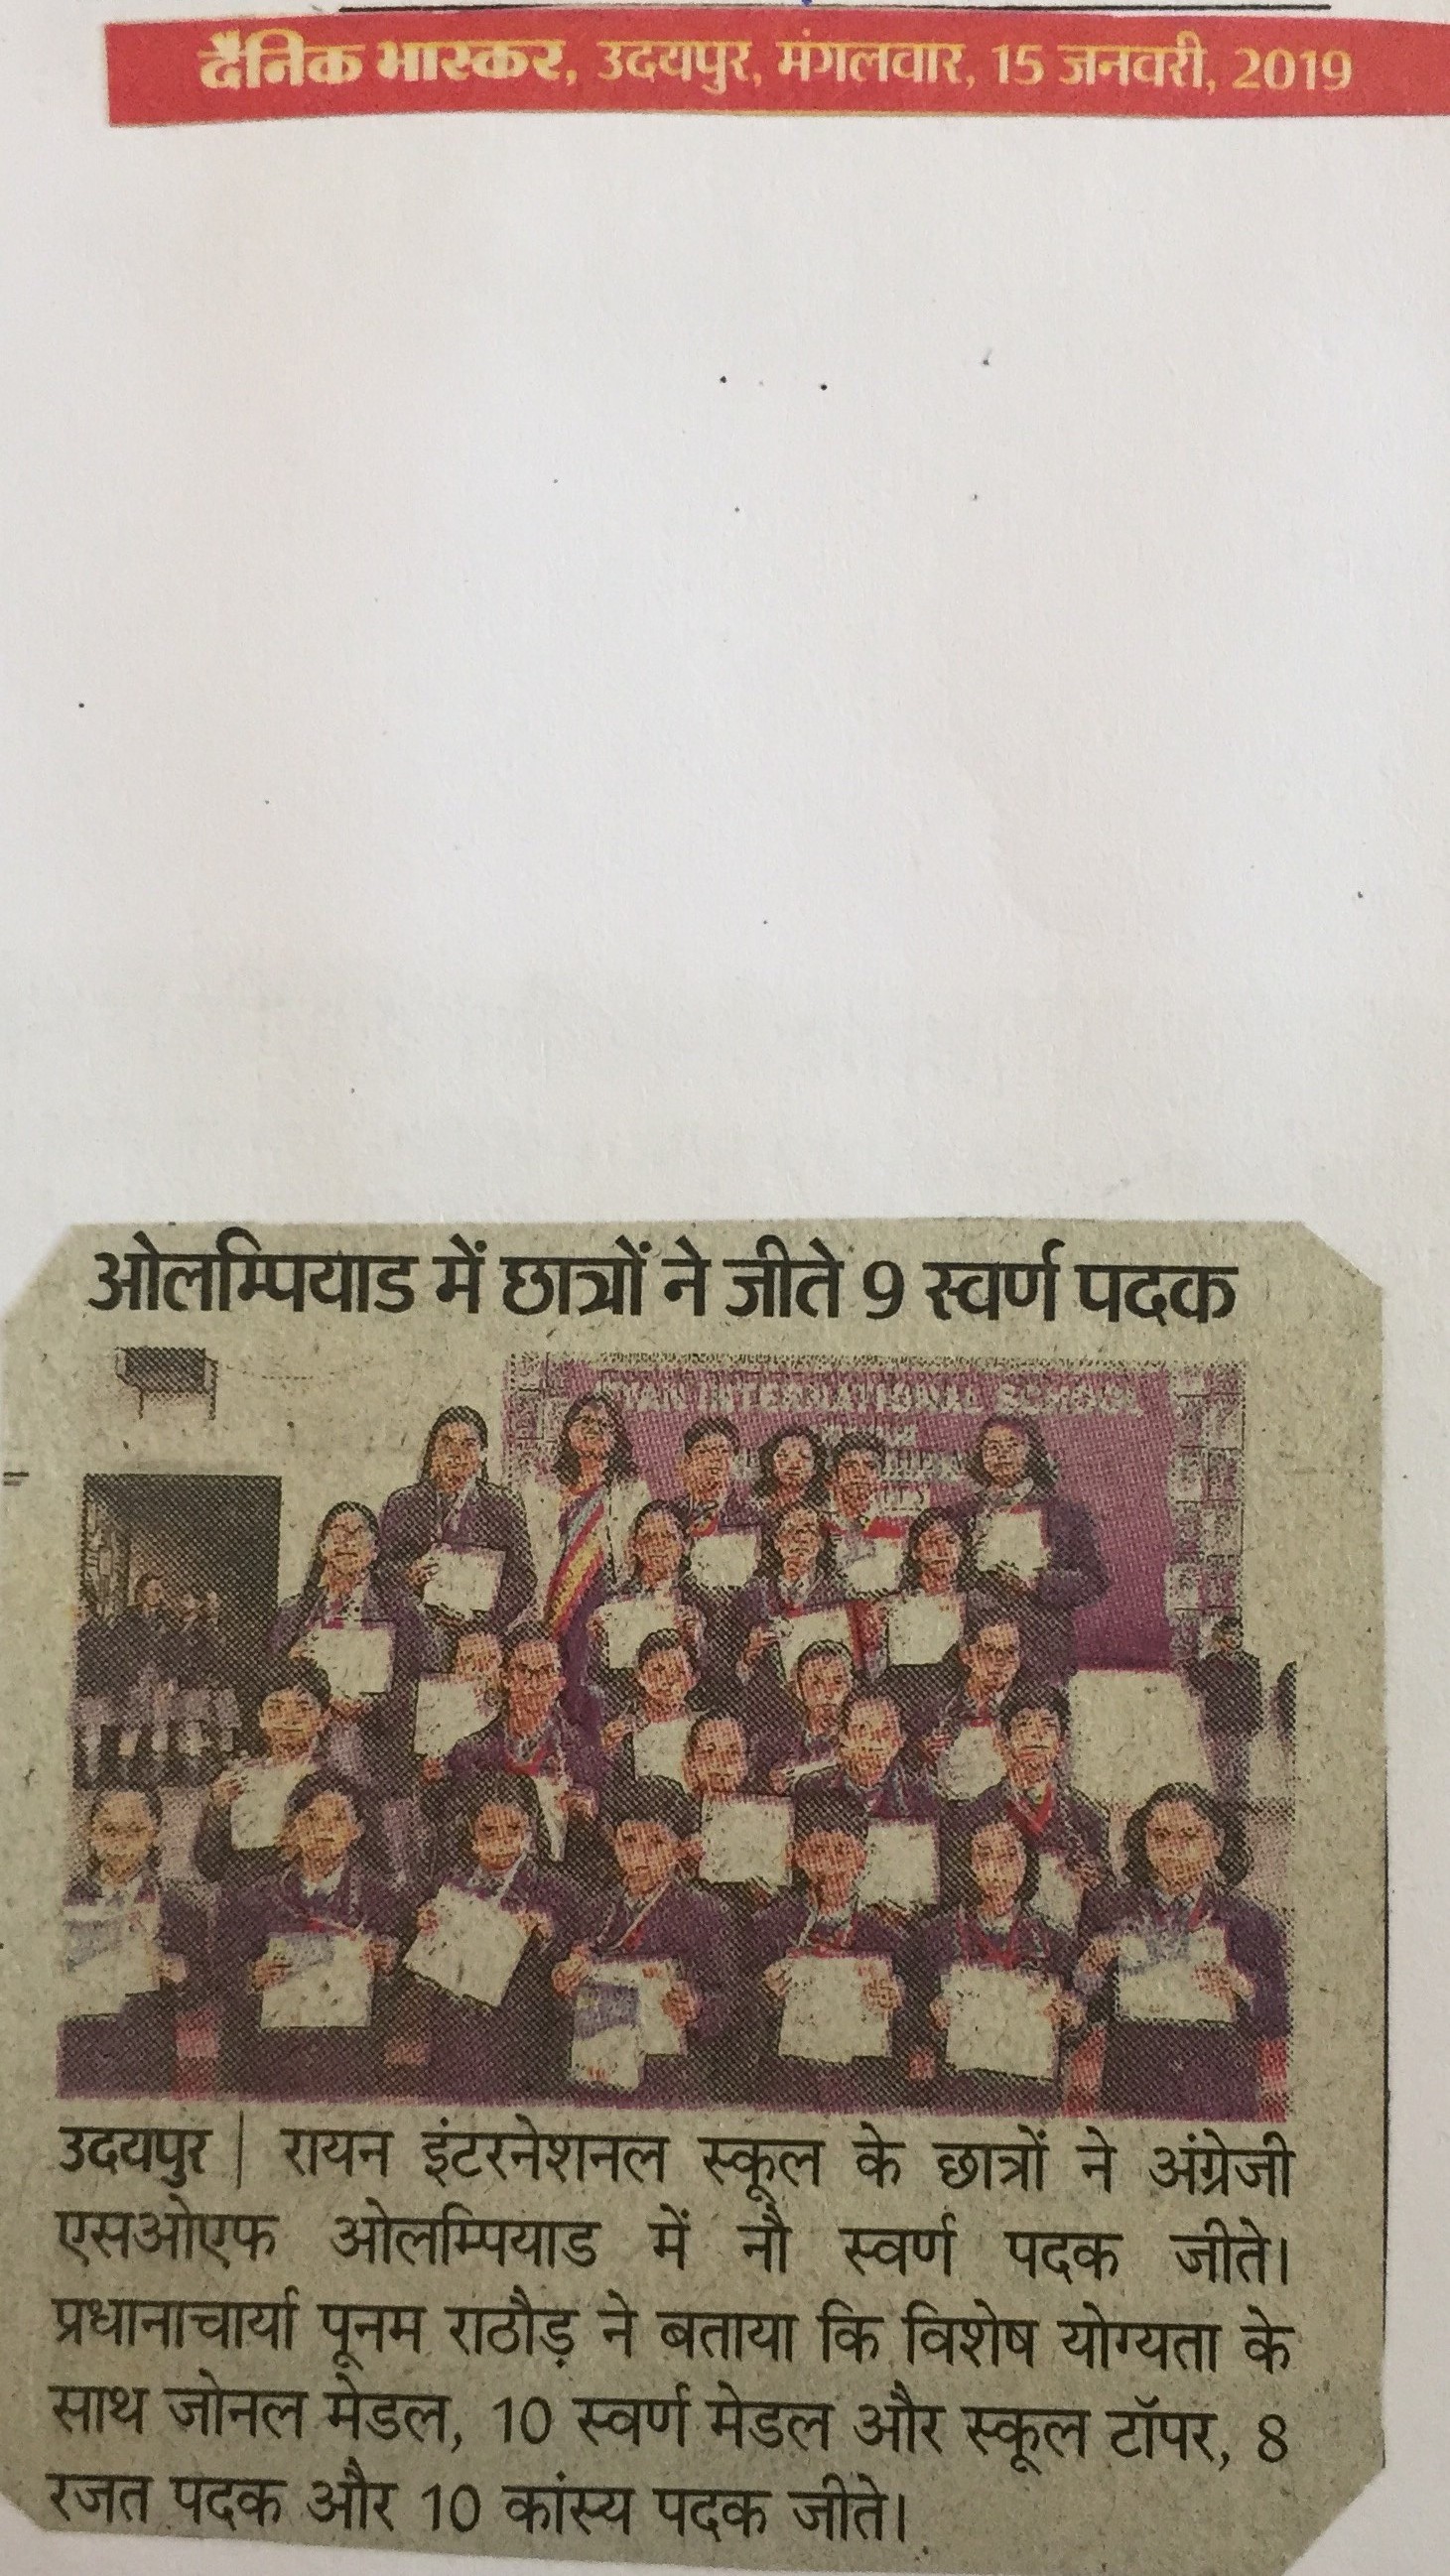 SOF English Olympiad Achievement - Ryan international School, Udaipur